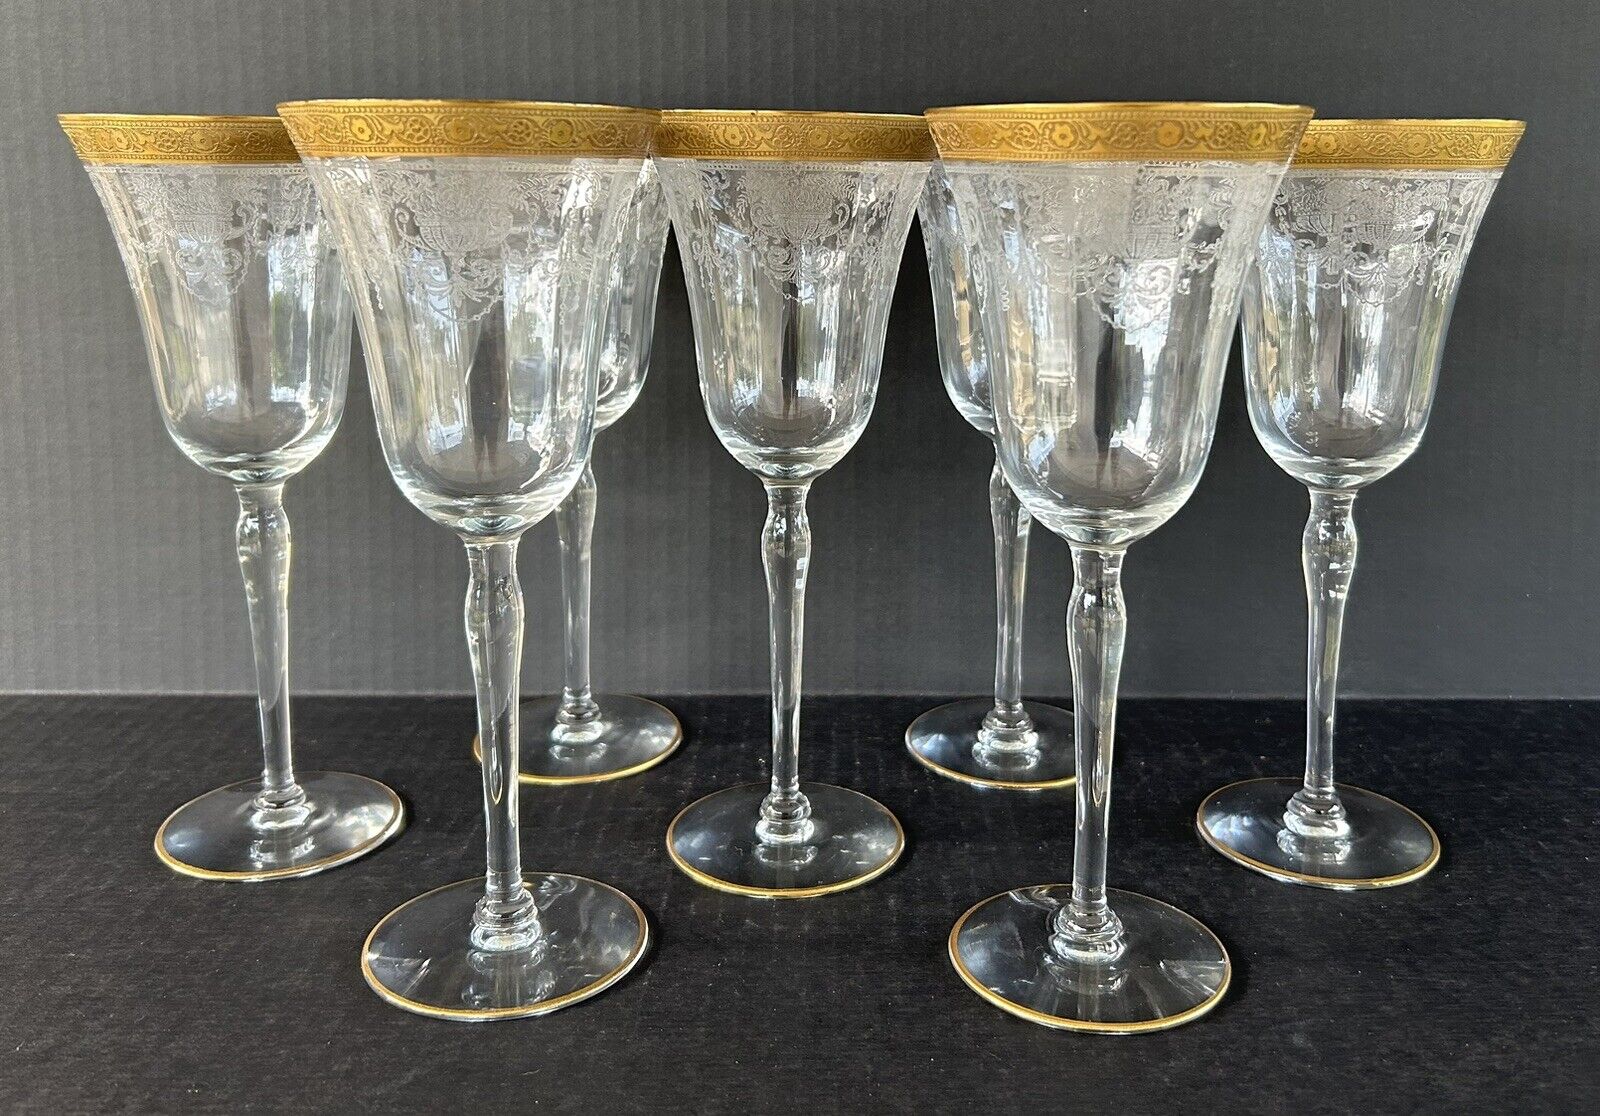 Vintage Etched Water Wine Goblets Glasses 8 3/4” Set of 7 Gold Encrusted c1930